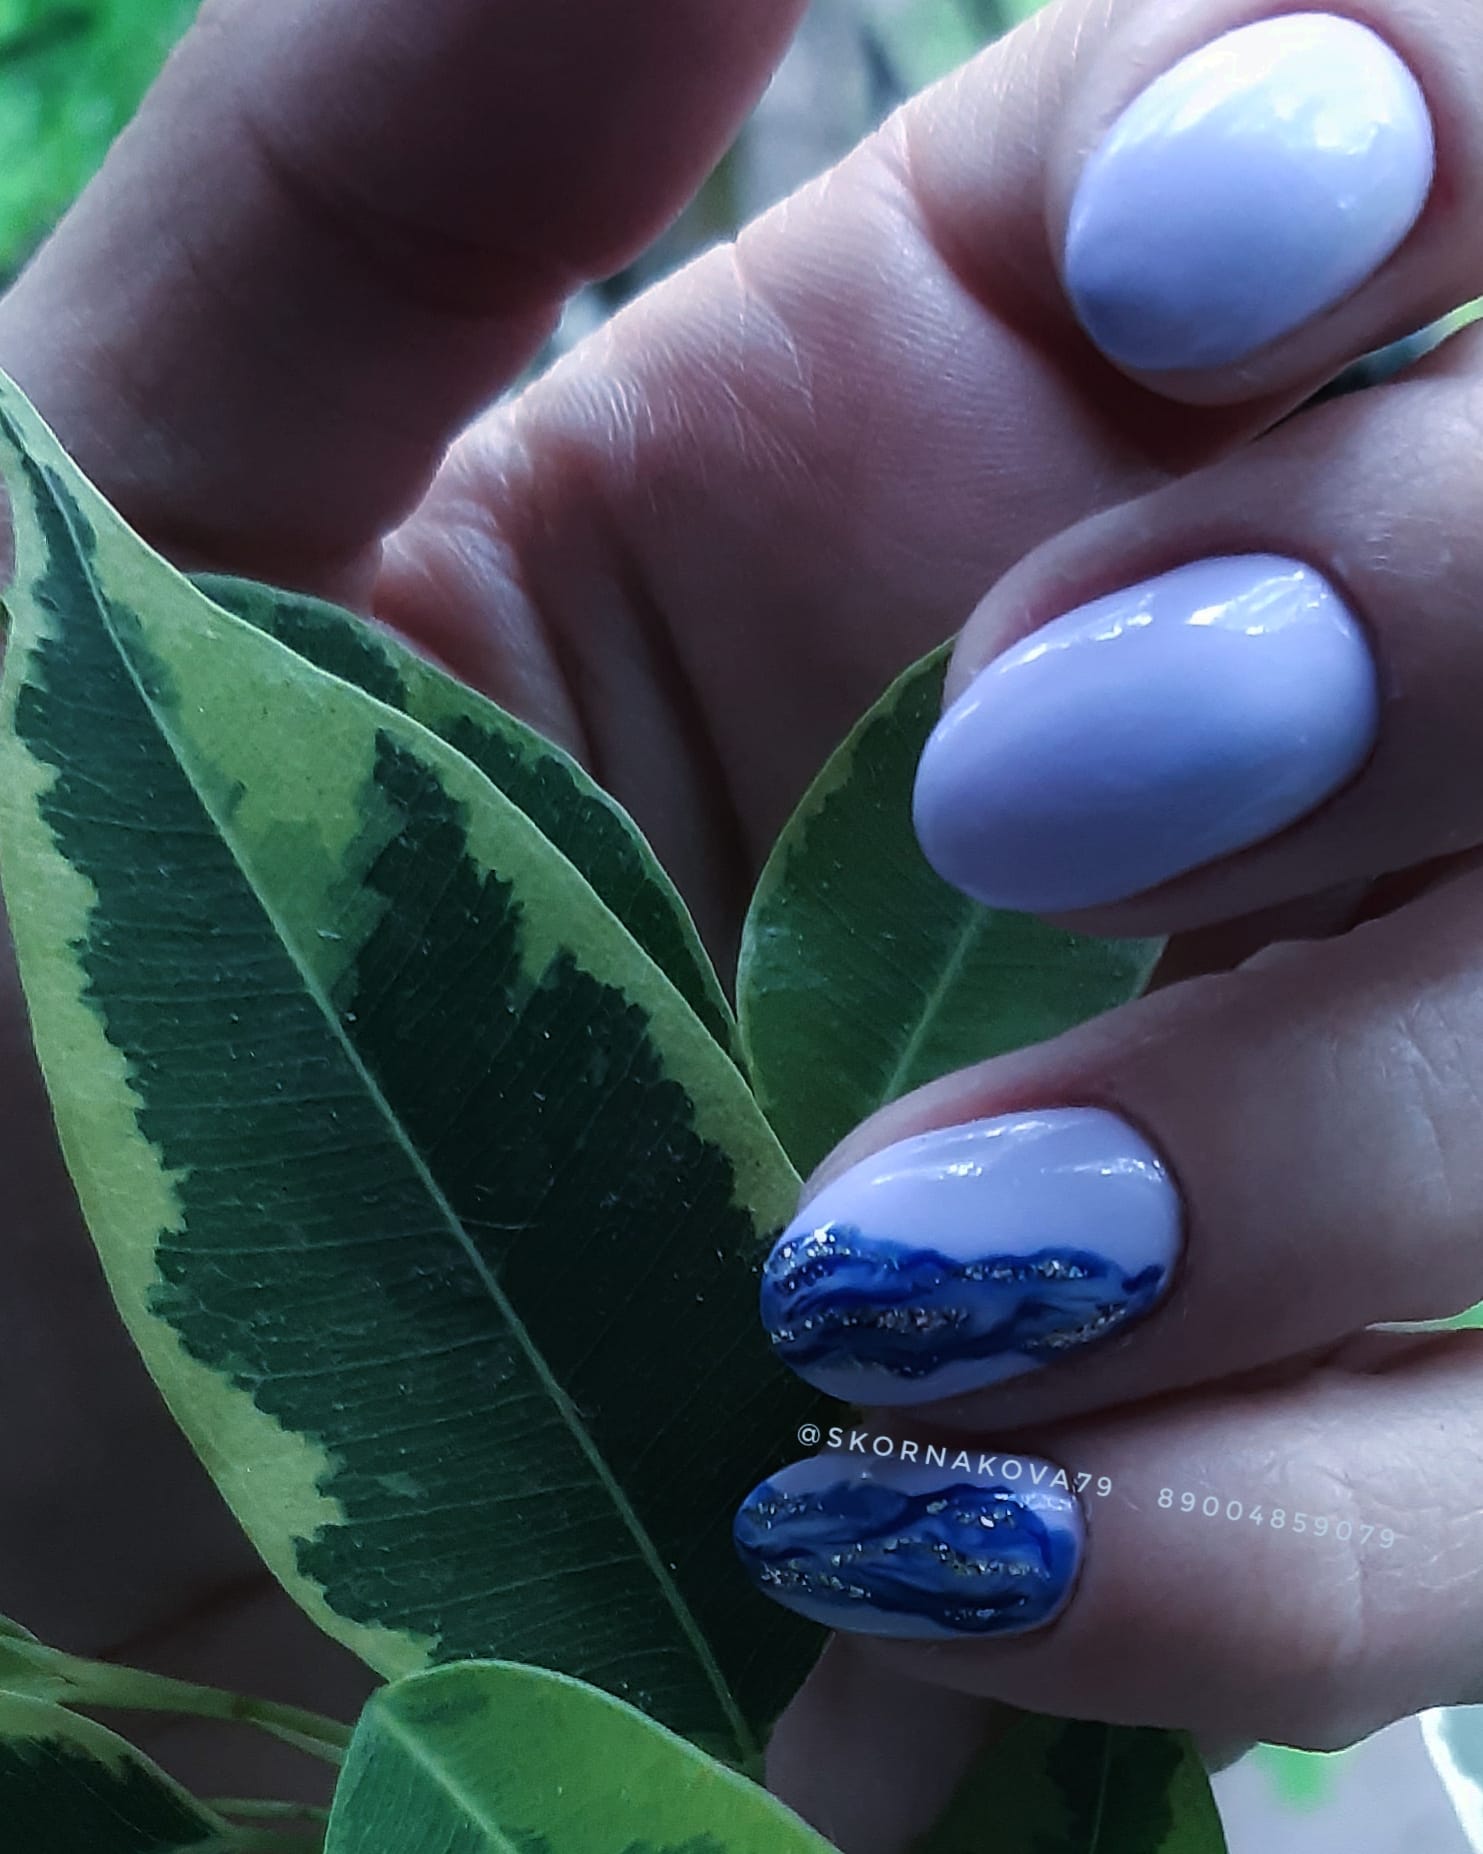 Маникюр с морским дизайном в голубом цвете на короткие ногти.